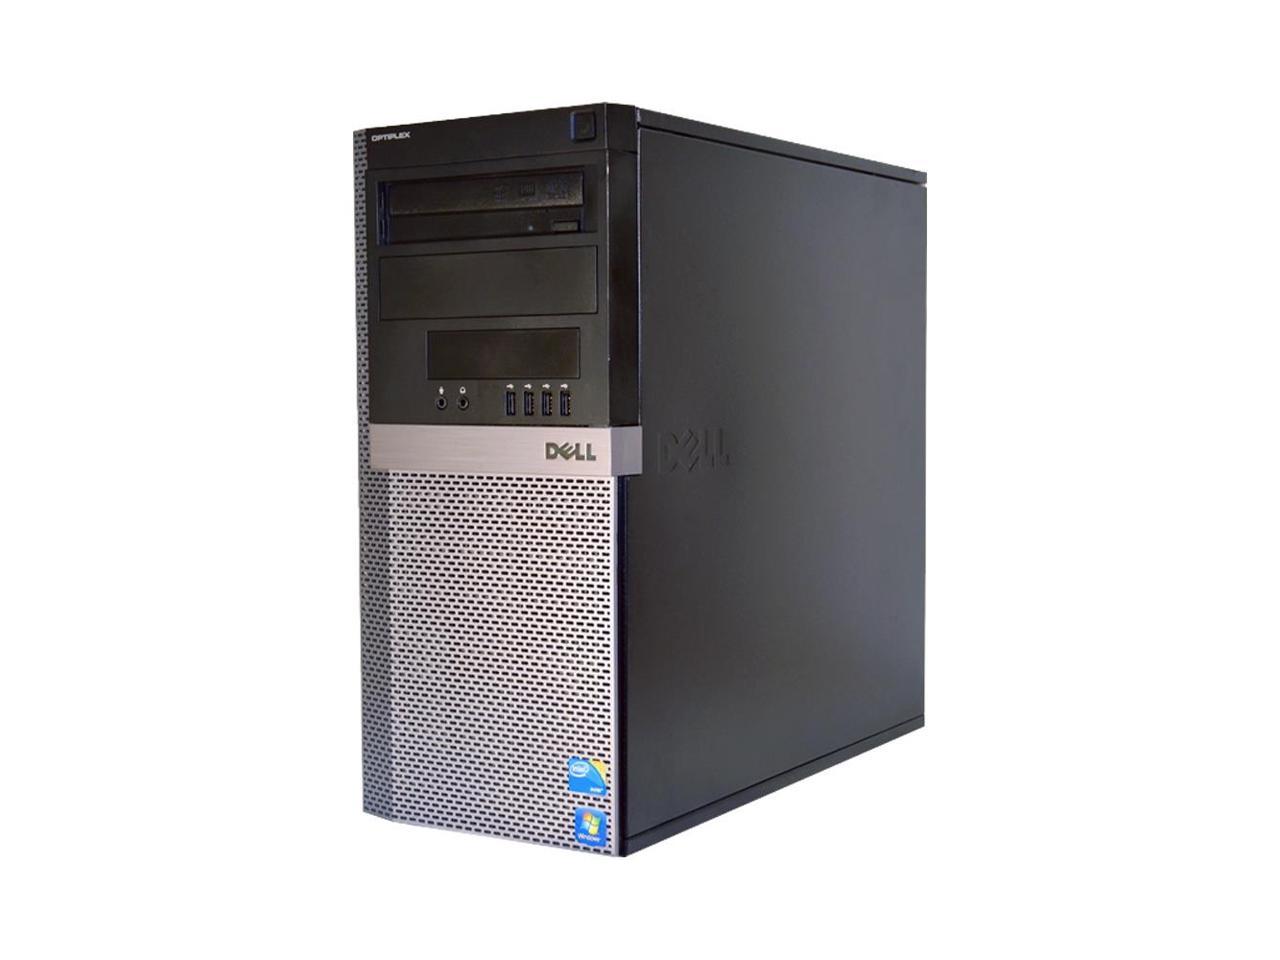 Dell OptiPlex 960 MT/Core 2 Duo E8400 @ 3.00 GHz/4GB DDR2/80GB HDD/DVD-RW/No OS